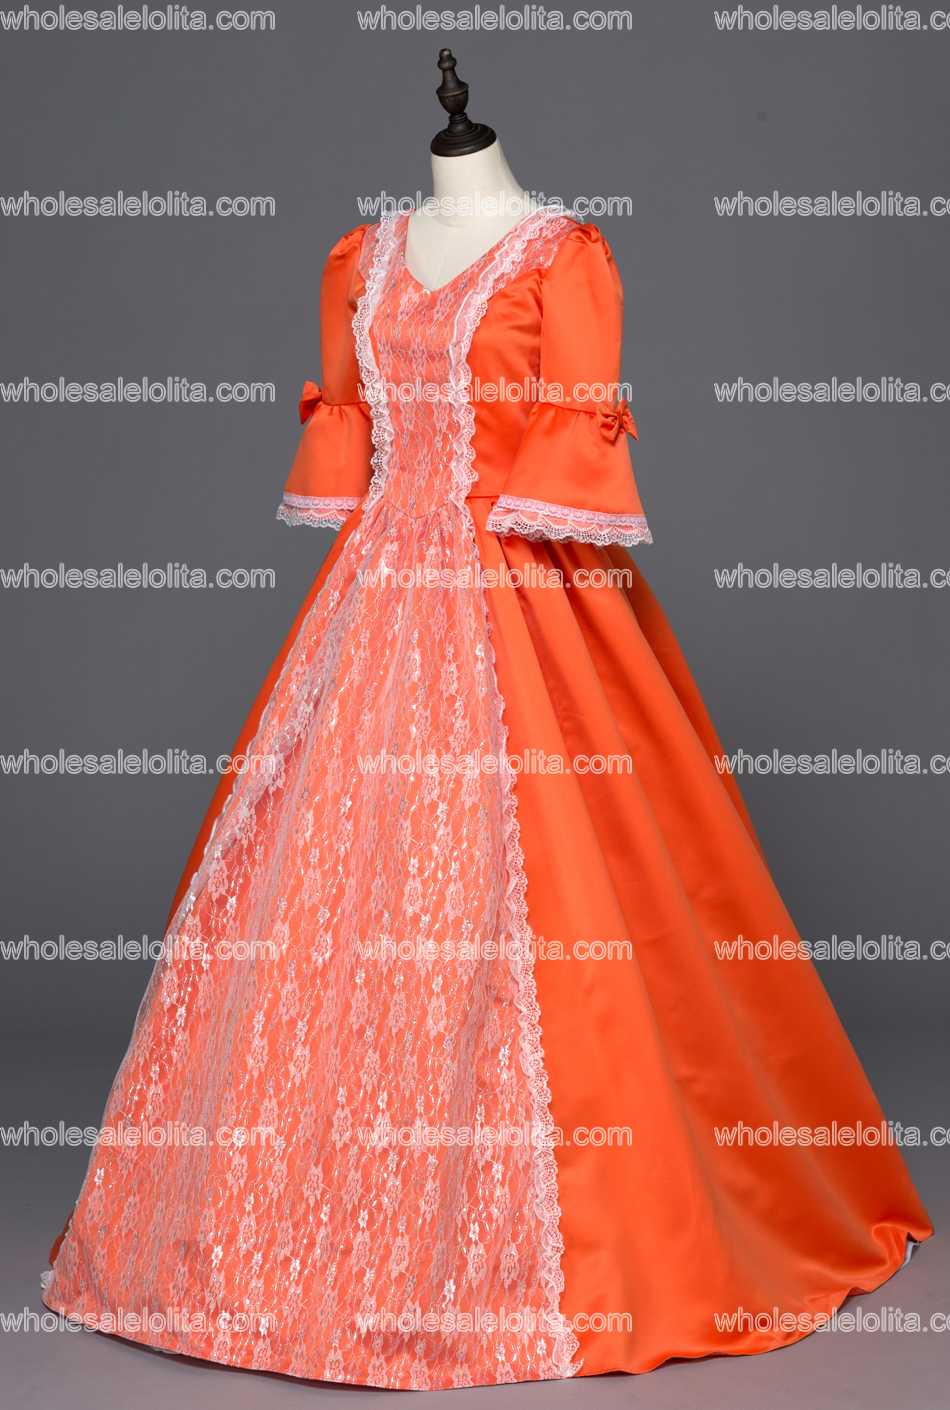 KEMAO Портокал Врвот Продажба Викторија Граѓанска Војна Готски Период Викторија Edwardian Westworld Принцеза Рококо Cosplay